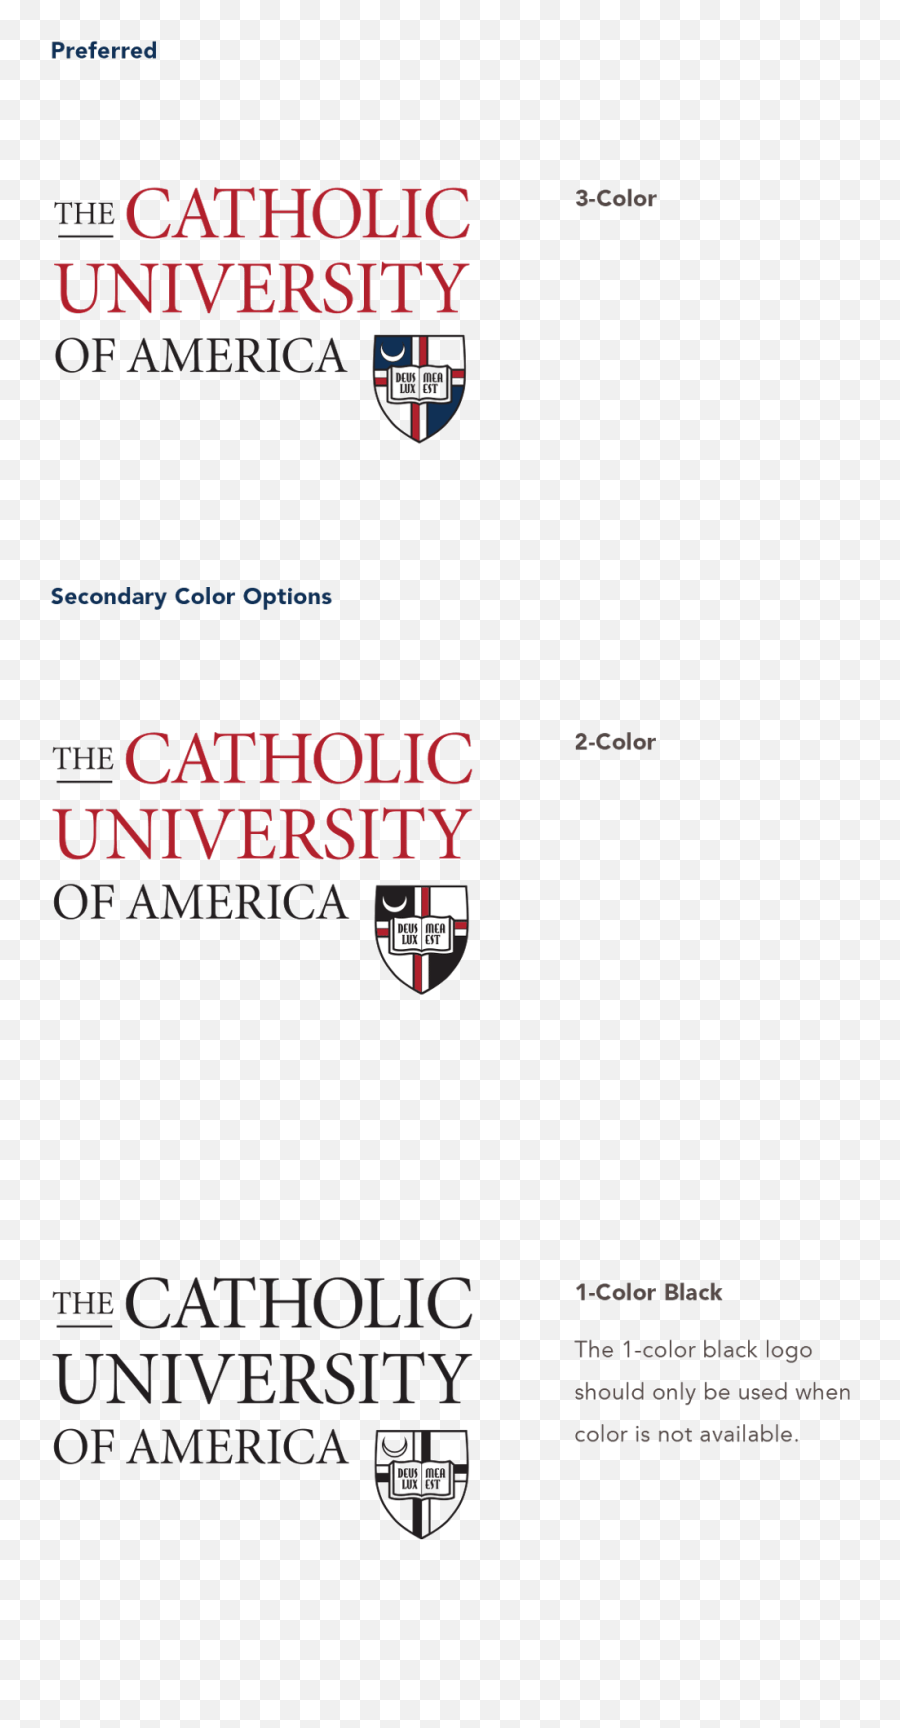 Identity Standards Washington Dc Catholic University - Catholic University Of America Png,Typography Logos